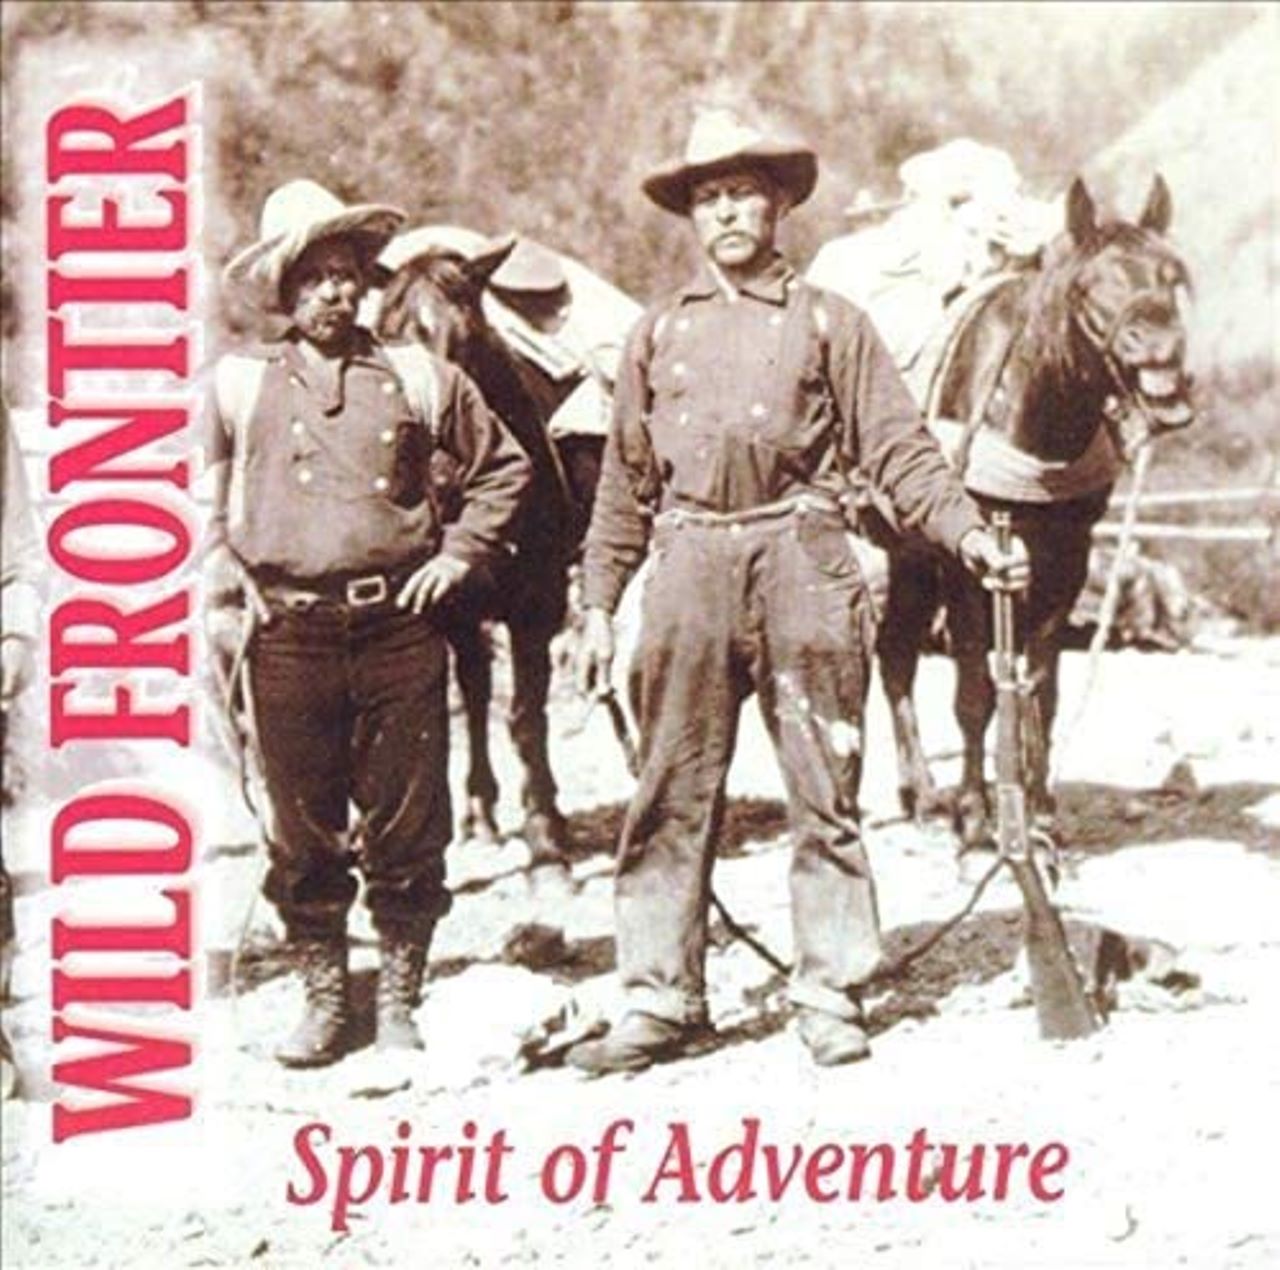 Wild Frontier - Spirit Of Adventure cover album